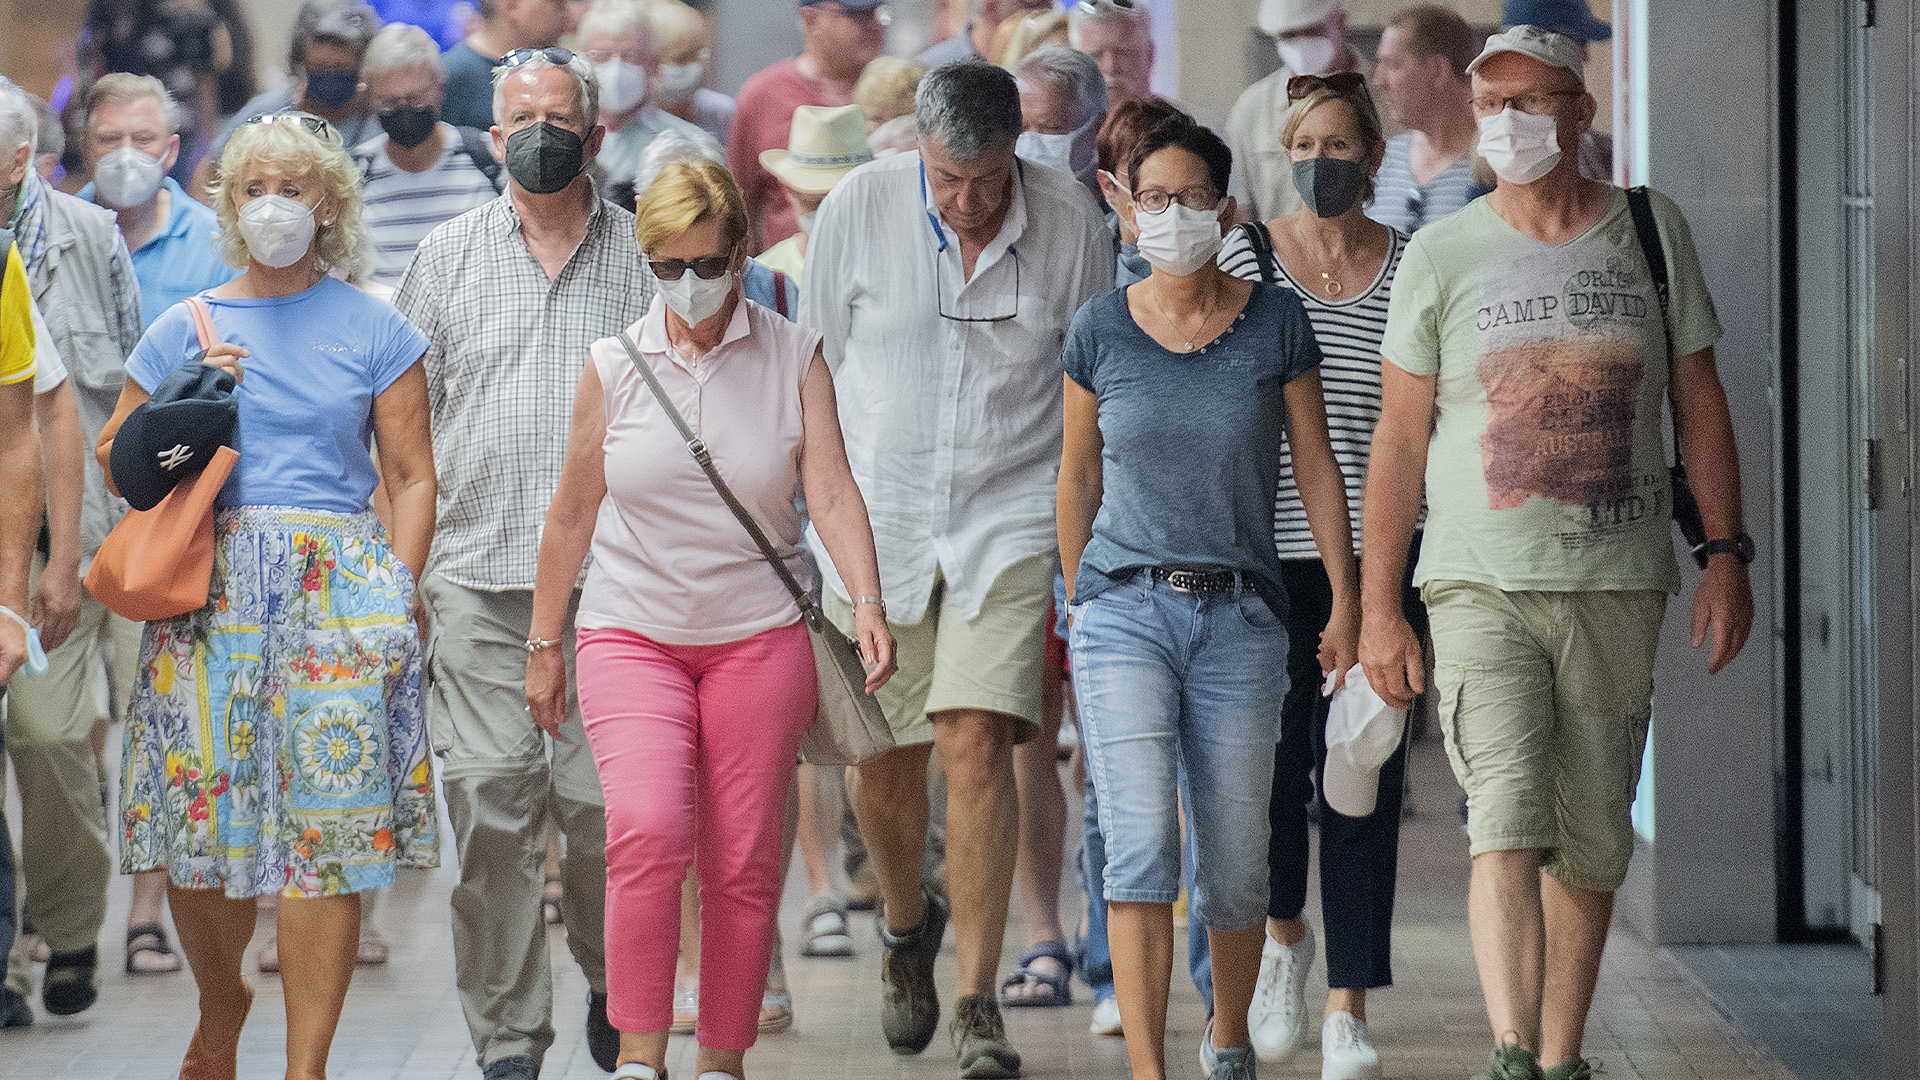 Les gens portent des masques faciaux lorsqu'ils traversent une station de métro à Montréal, le dimanche 17 juillet 2022, alors que la pandémie de COVID-19 se poursuit dans la province. LA PRESSE CANADIENNE/Graham Hughes